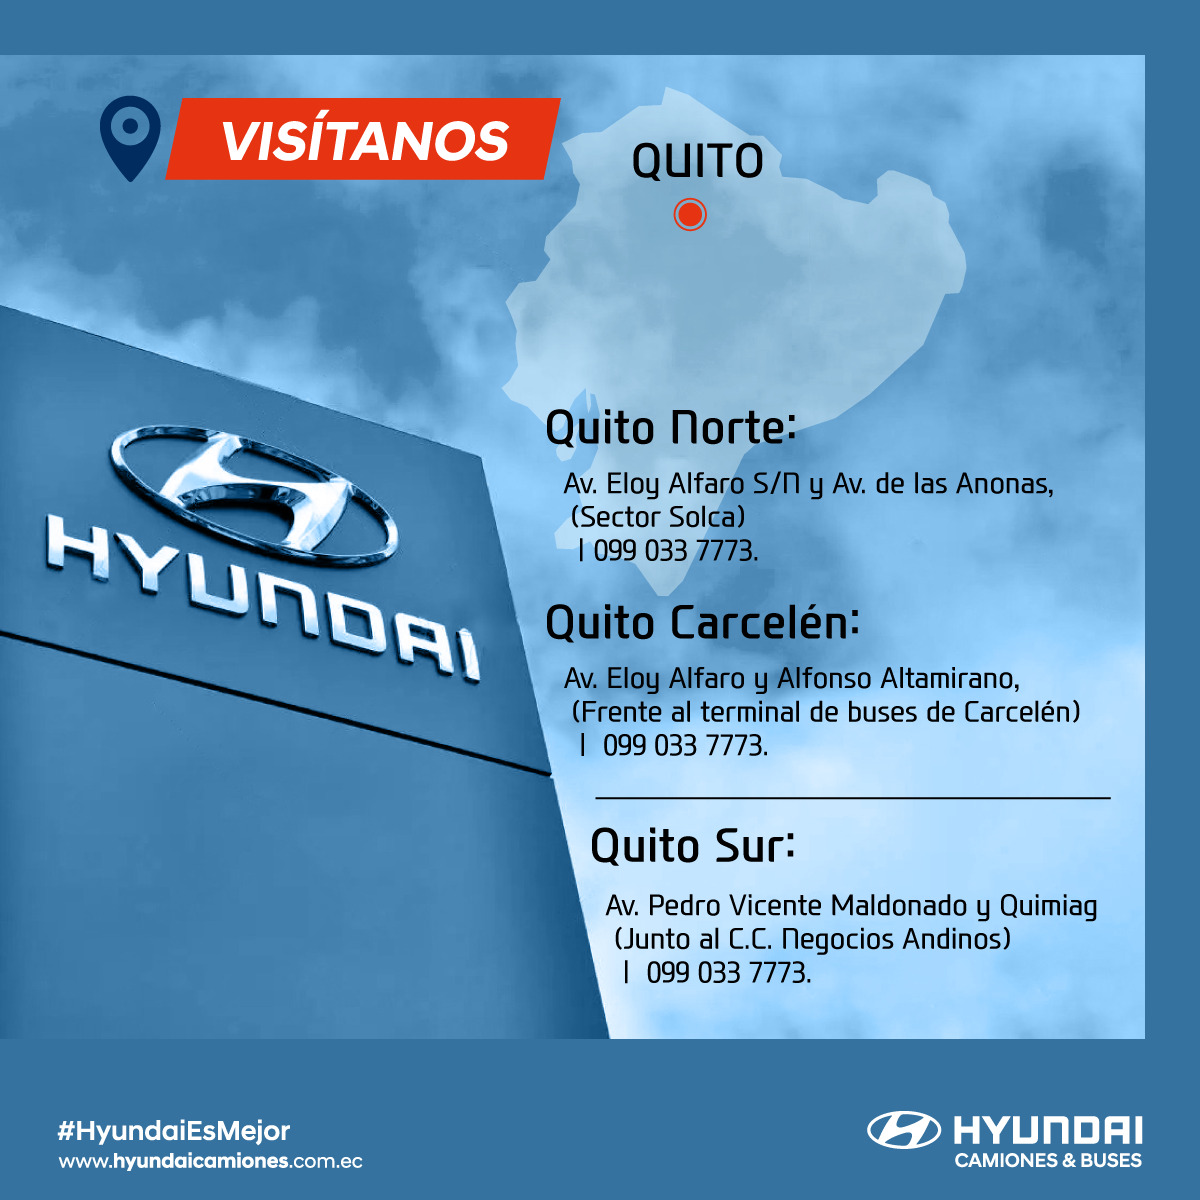 Visitanos Hyundai Camiones y Buses Ecuador - Quito